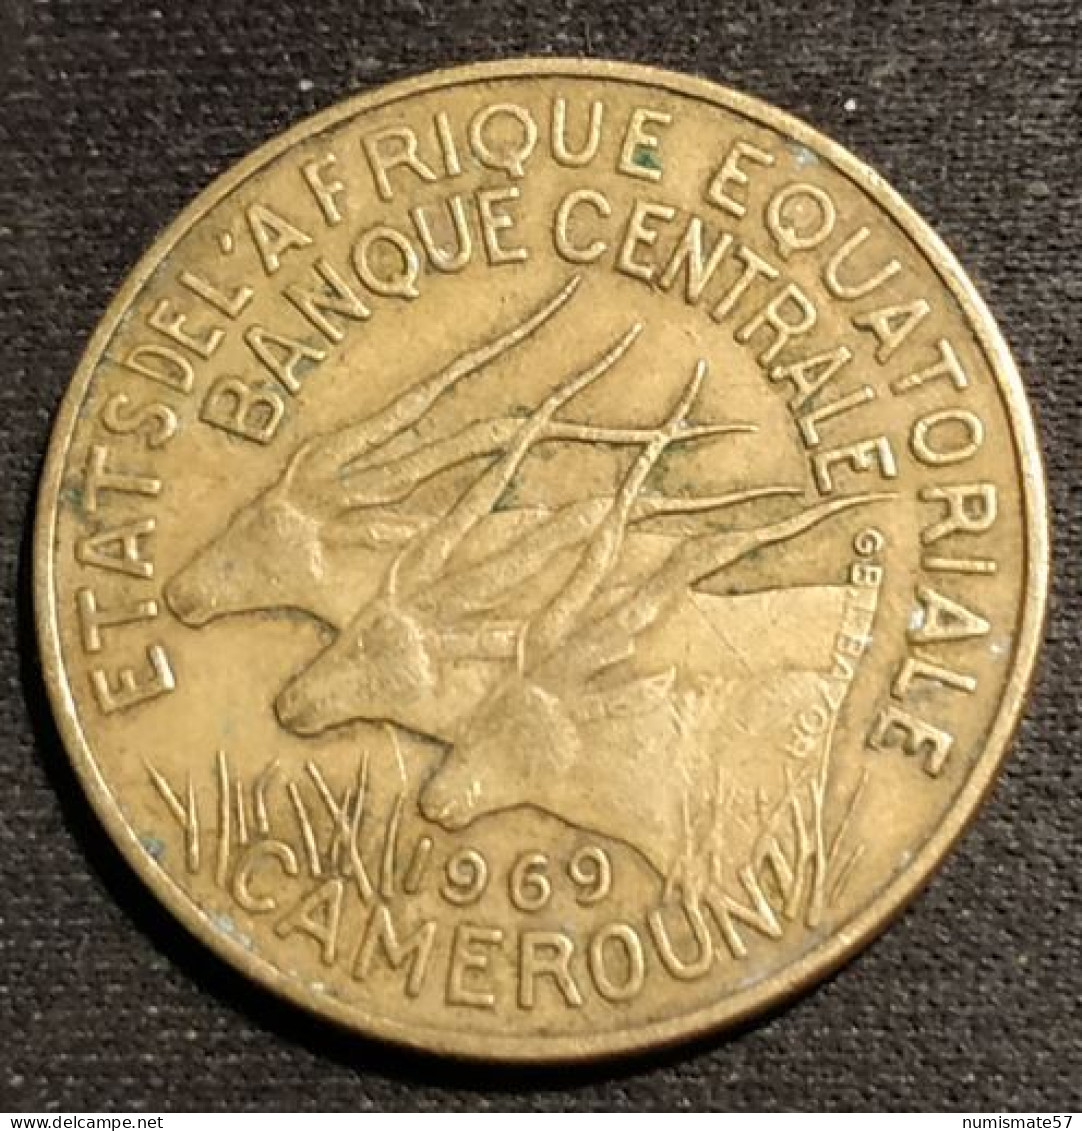 CAMEROUN - ETATS DE L'AFRIQUE EQUATORIALE - 10 FRANCS 1969 - KM 2a - Camerun